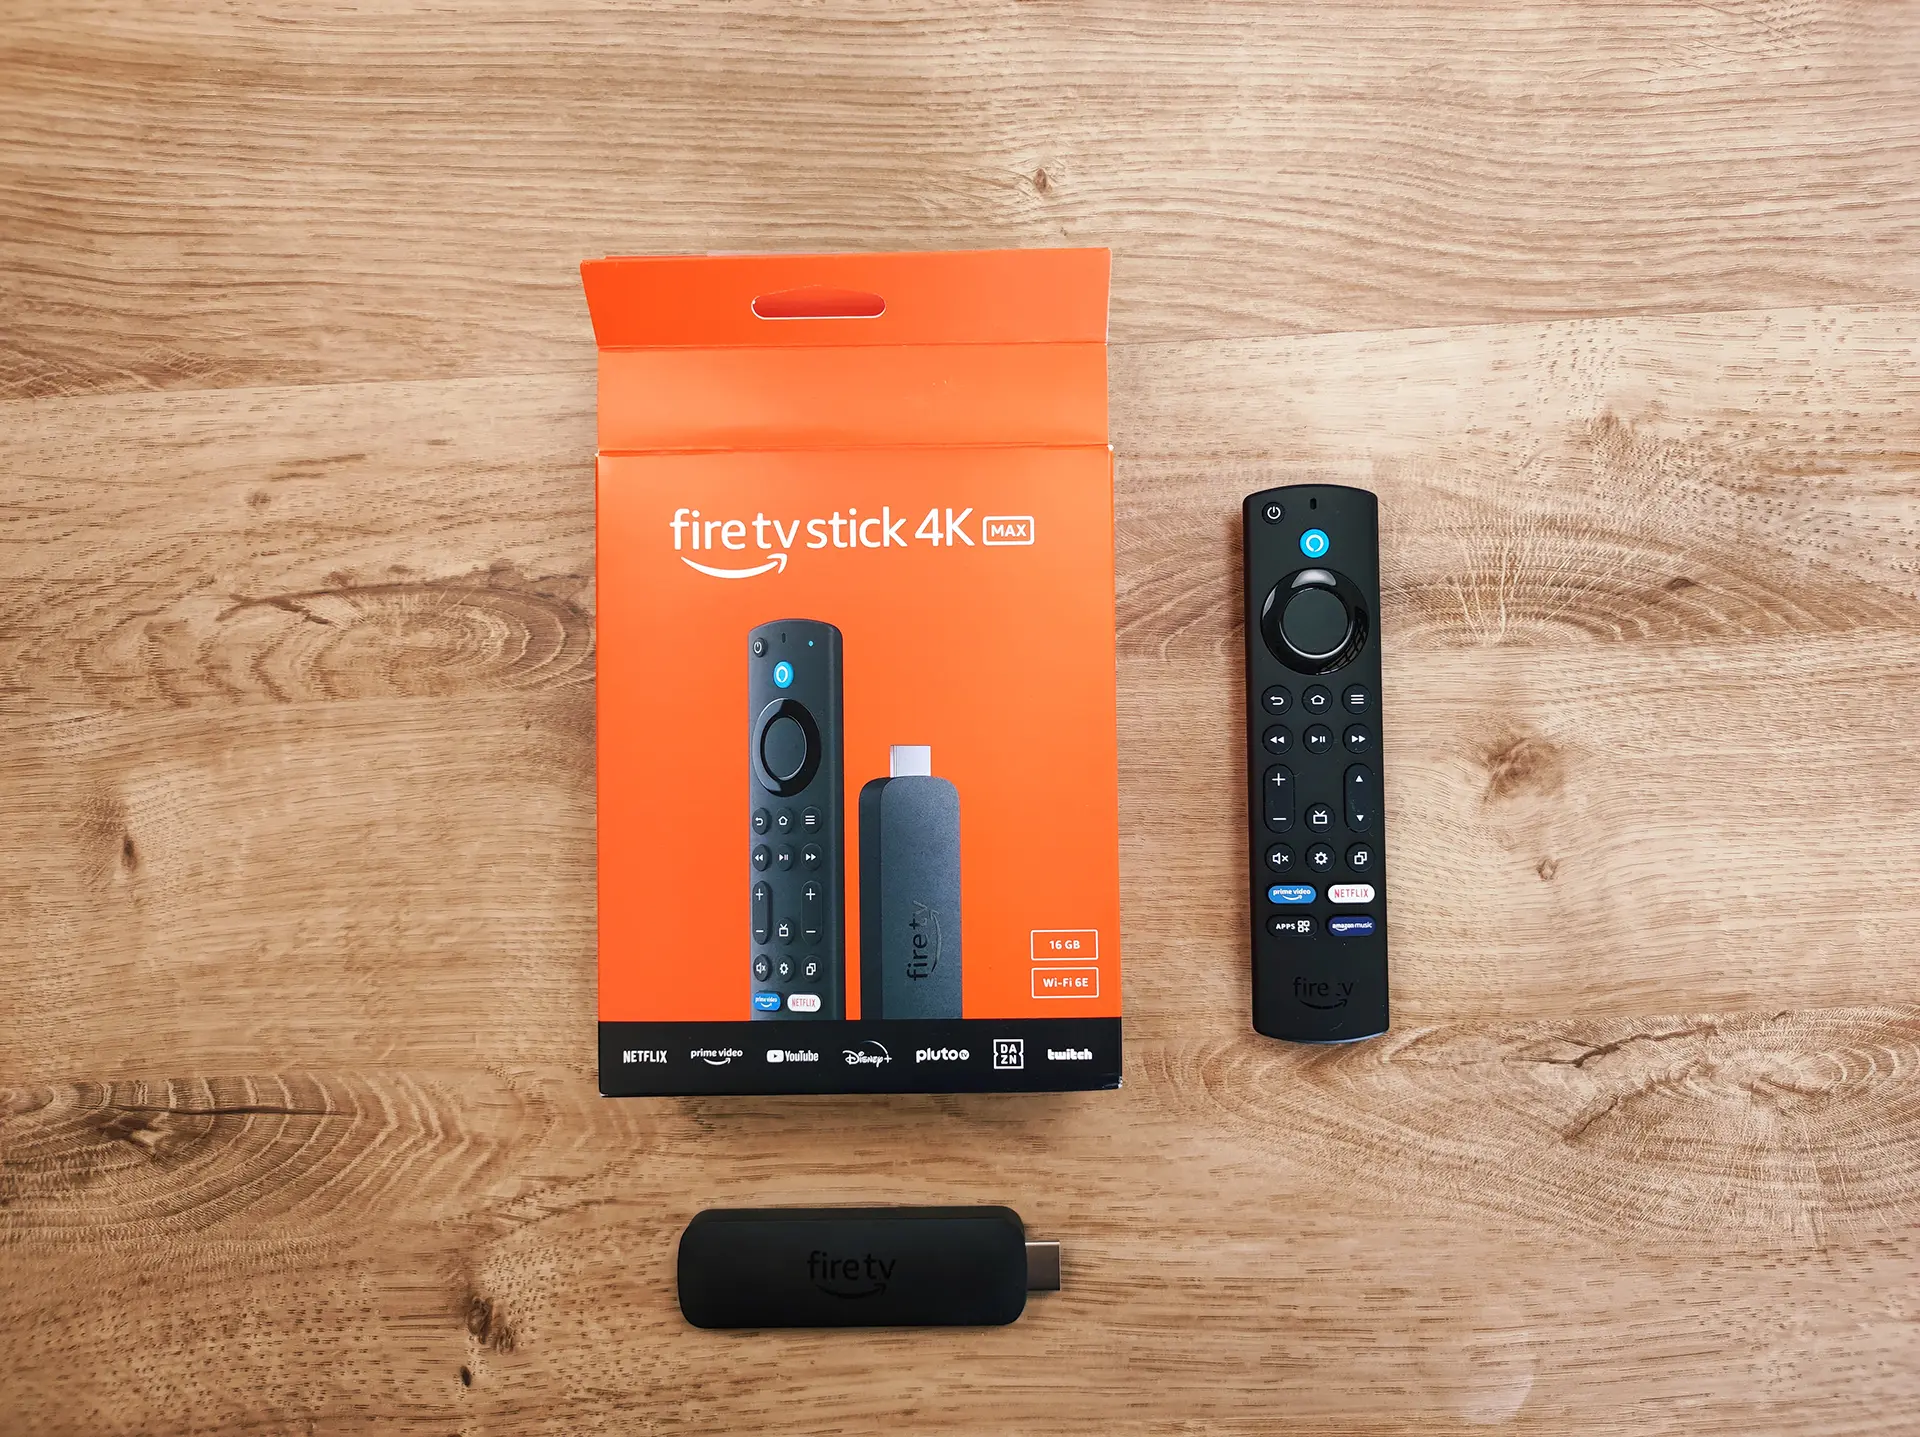 El Nuevo Amazon Fire TV Stick 4K Max en descuento para Reyes